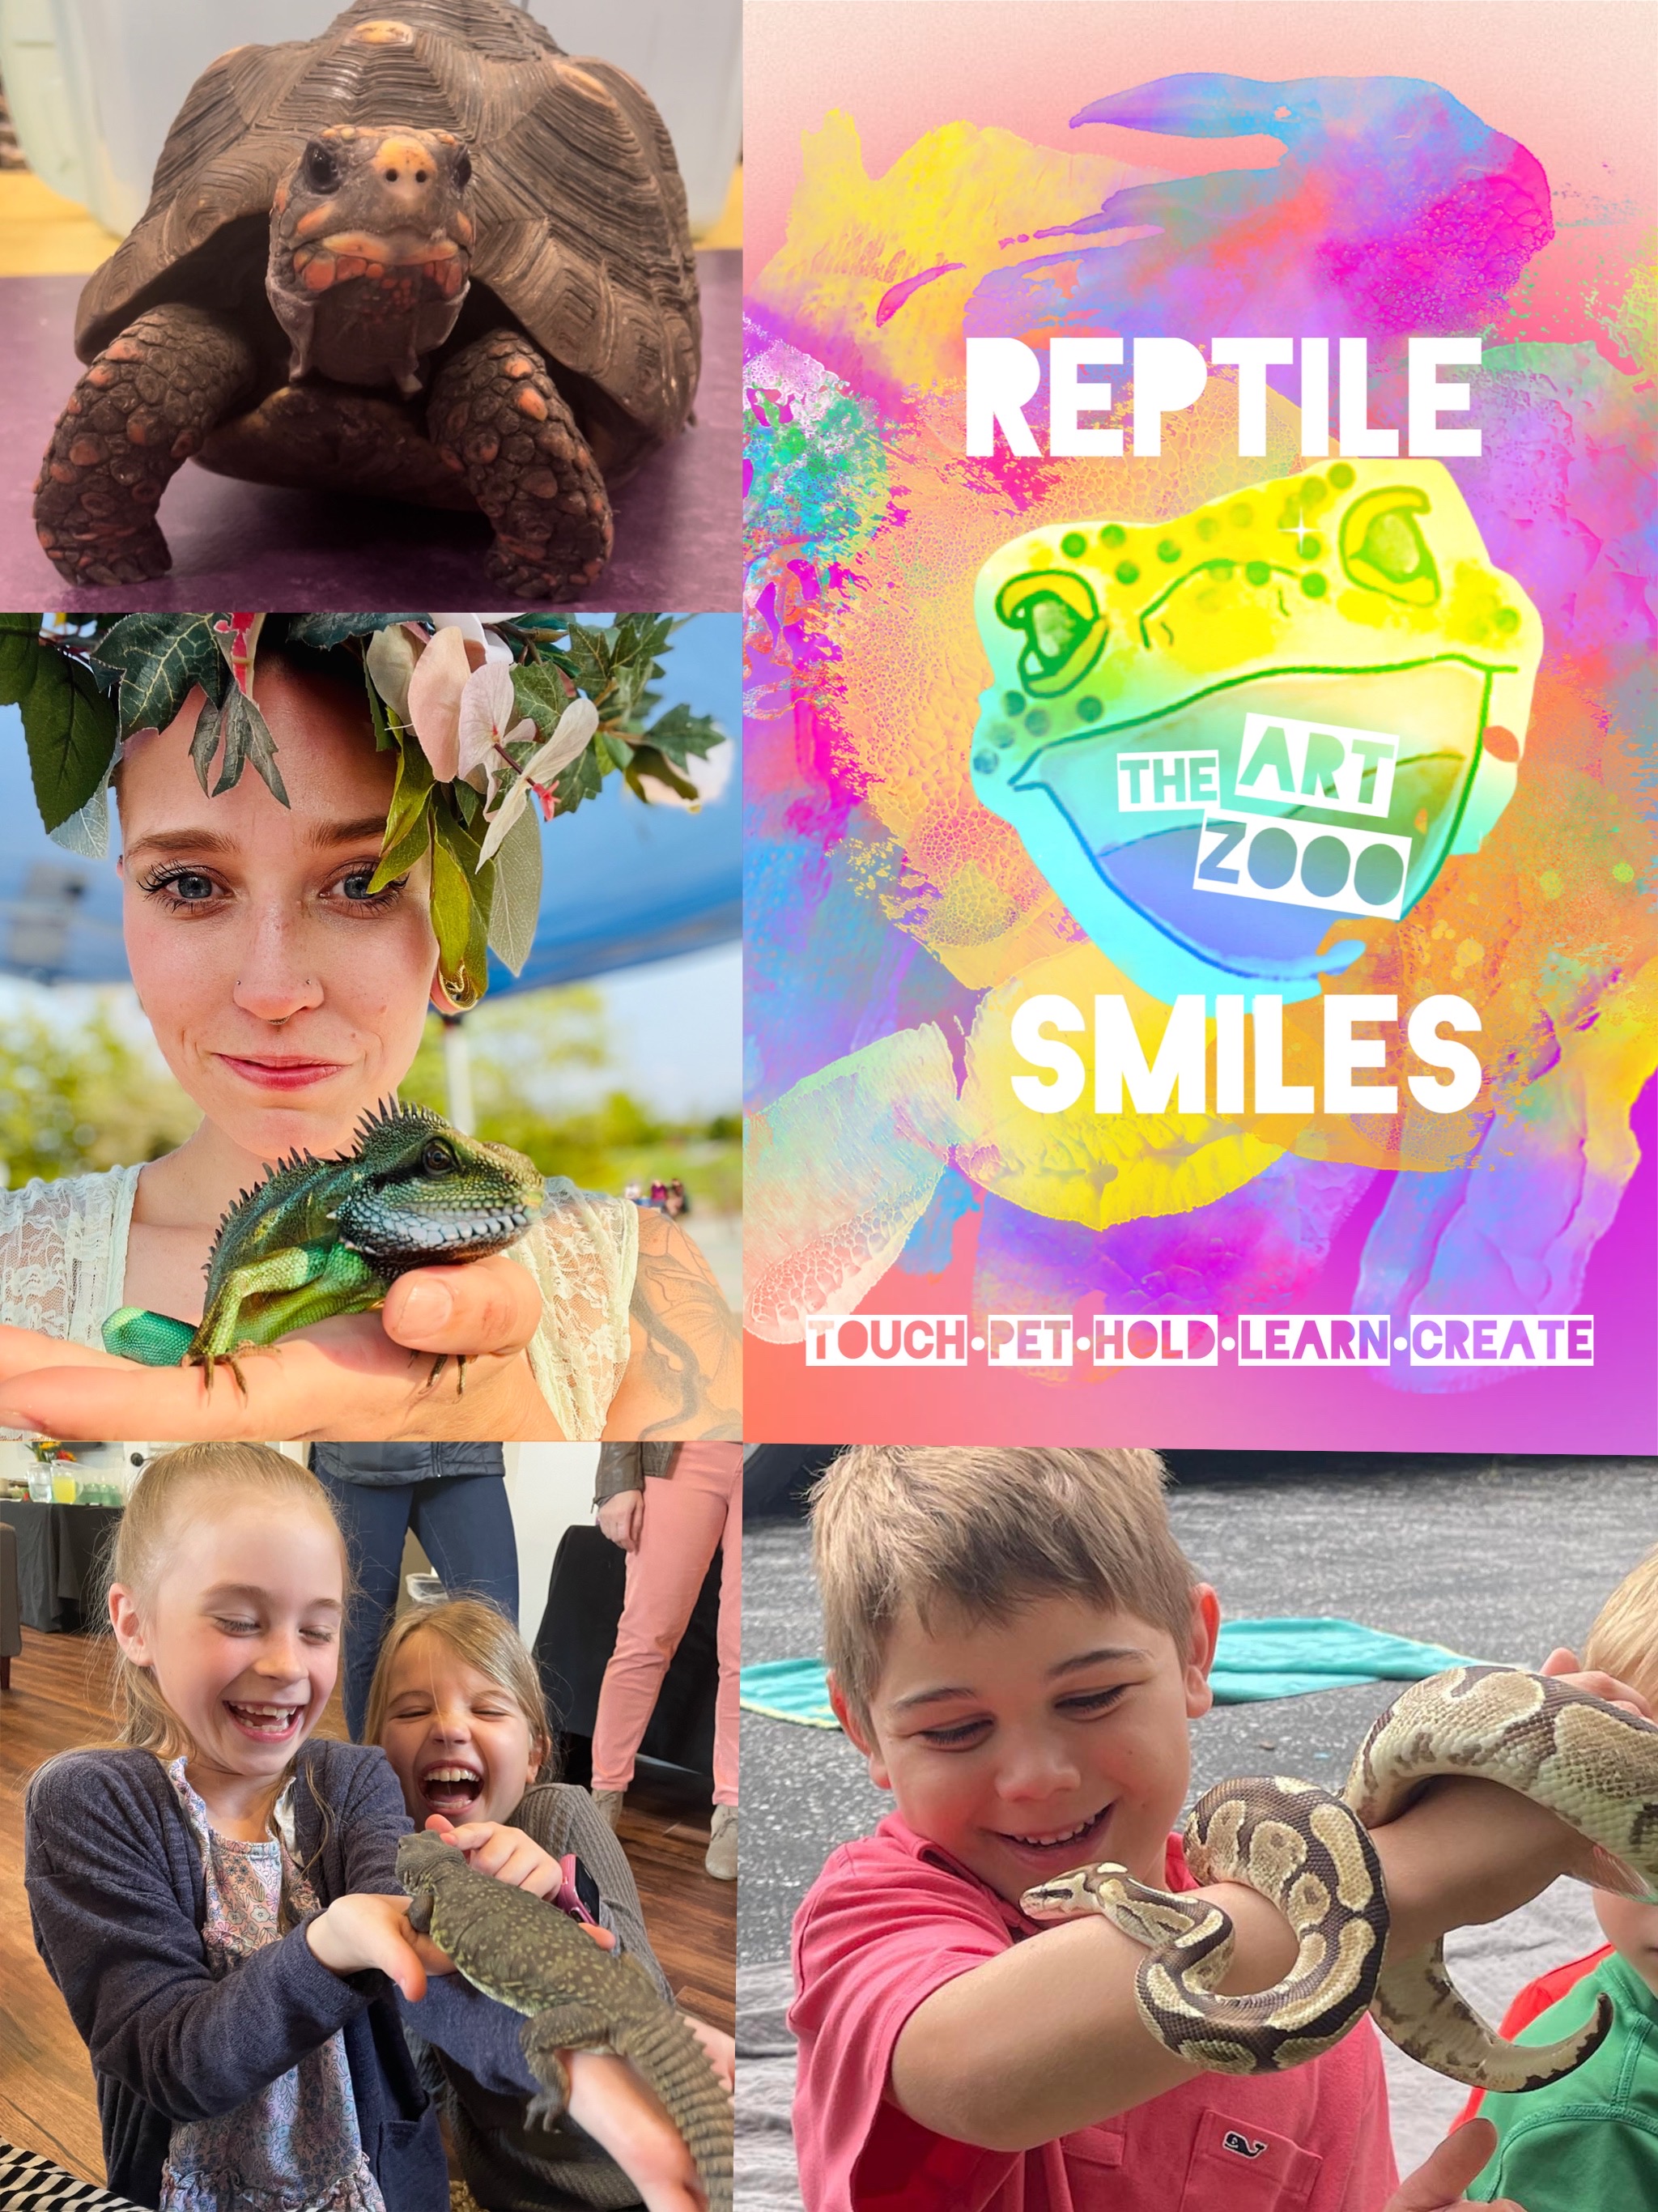 Reptile Smiles